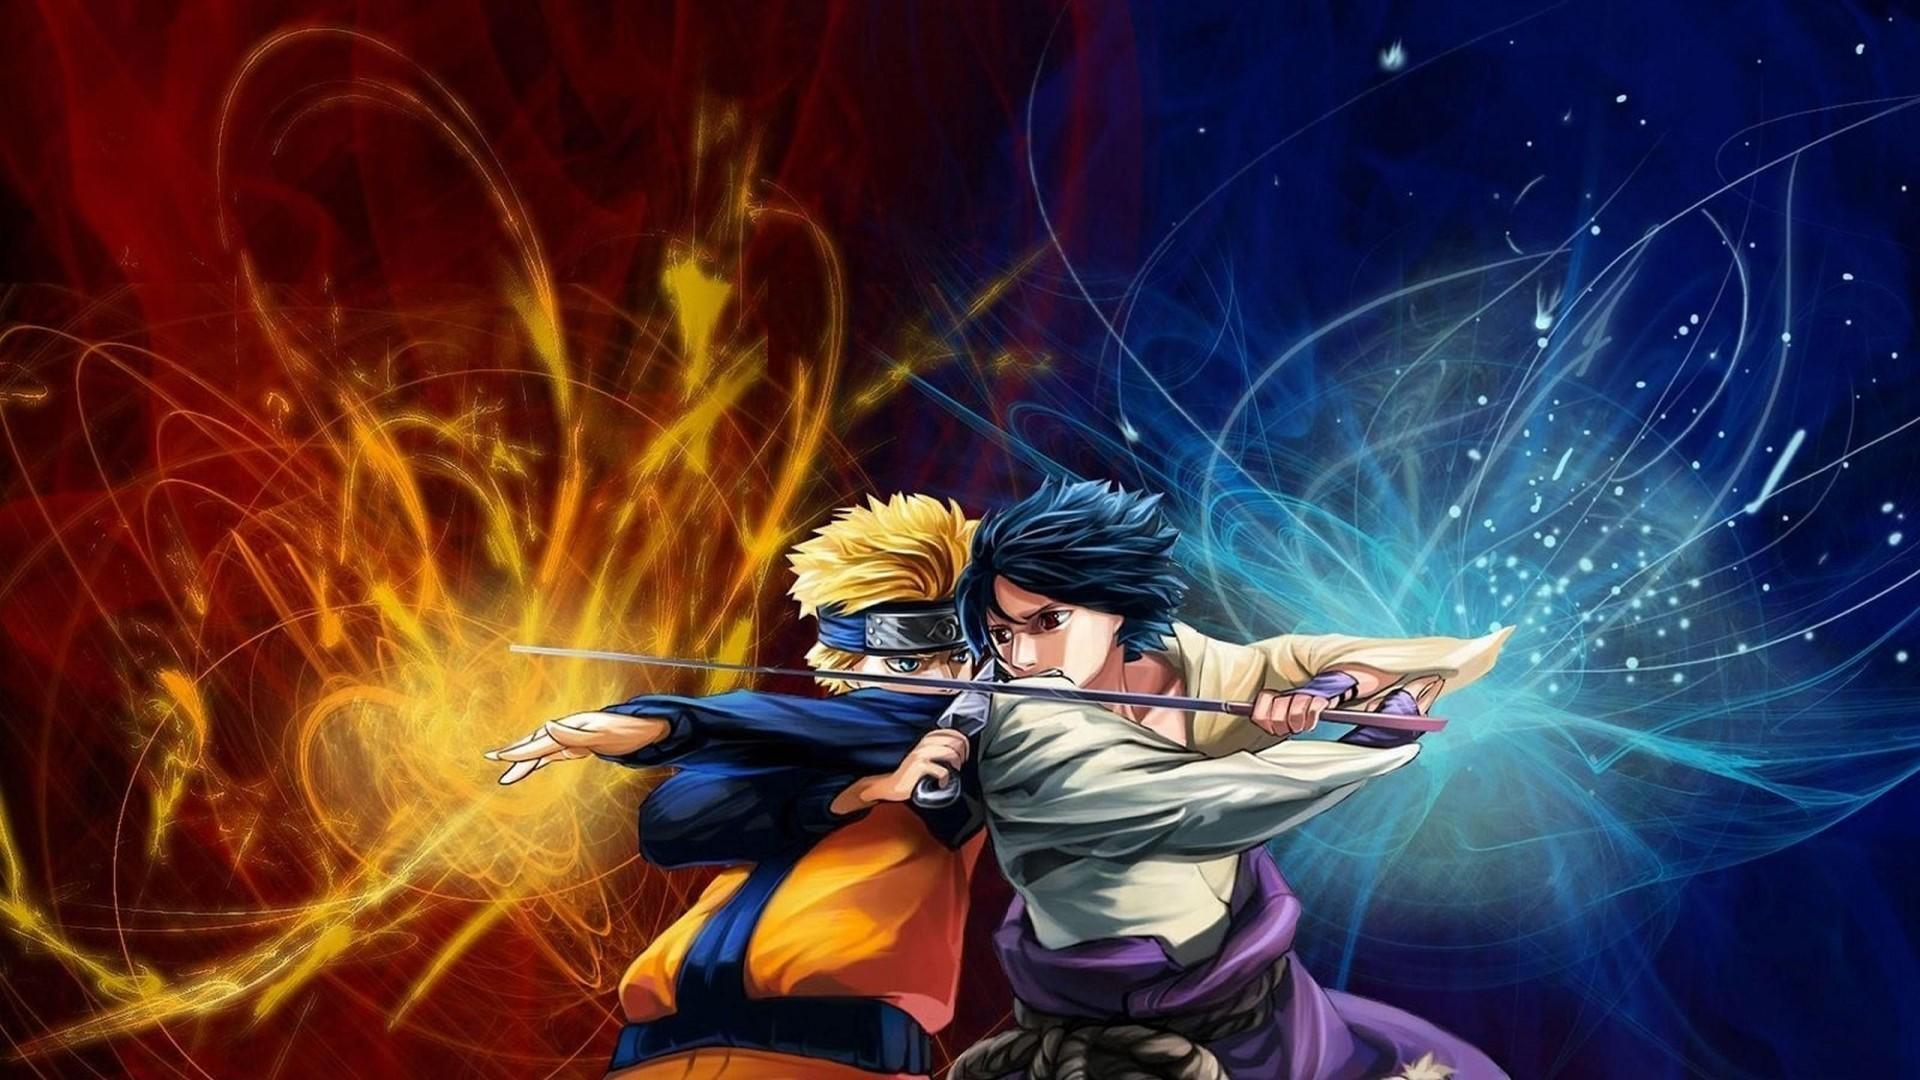 Hình nền Naruto vs Sasuke đầy kịch tính với hai nhân vật chính trên nền màu sắc đen trắng sẽ khiến bạn cảm thấy như đang ở trong trận chiến đầy gây cấn. Đây sẽ là sự lựa chọn hoàn hảo cho những người yêu thích anime Naruto.